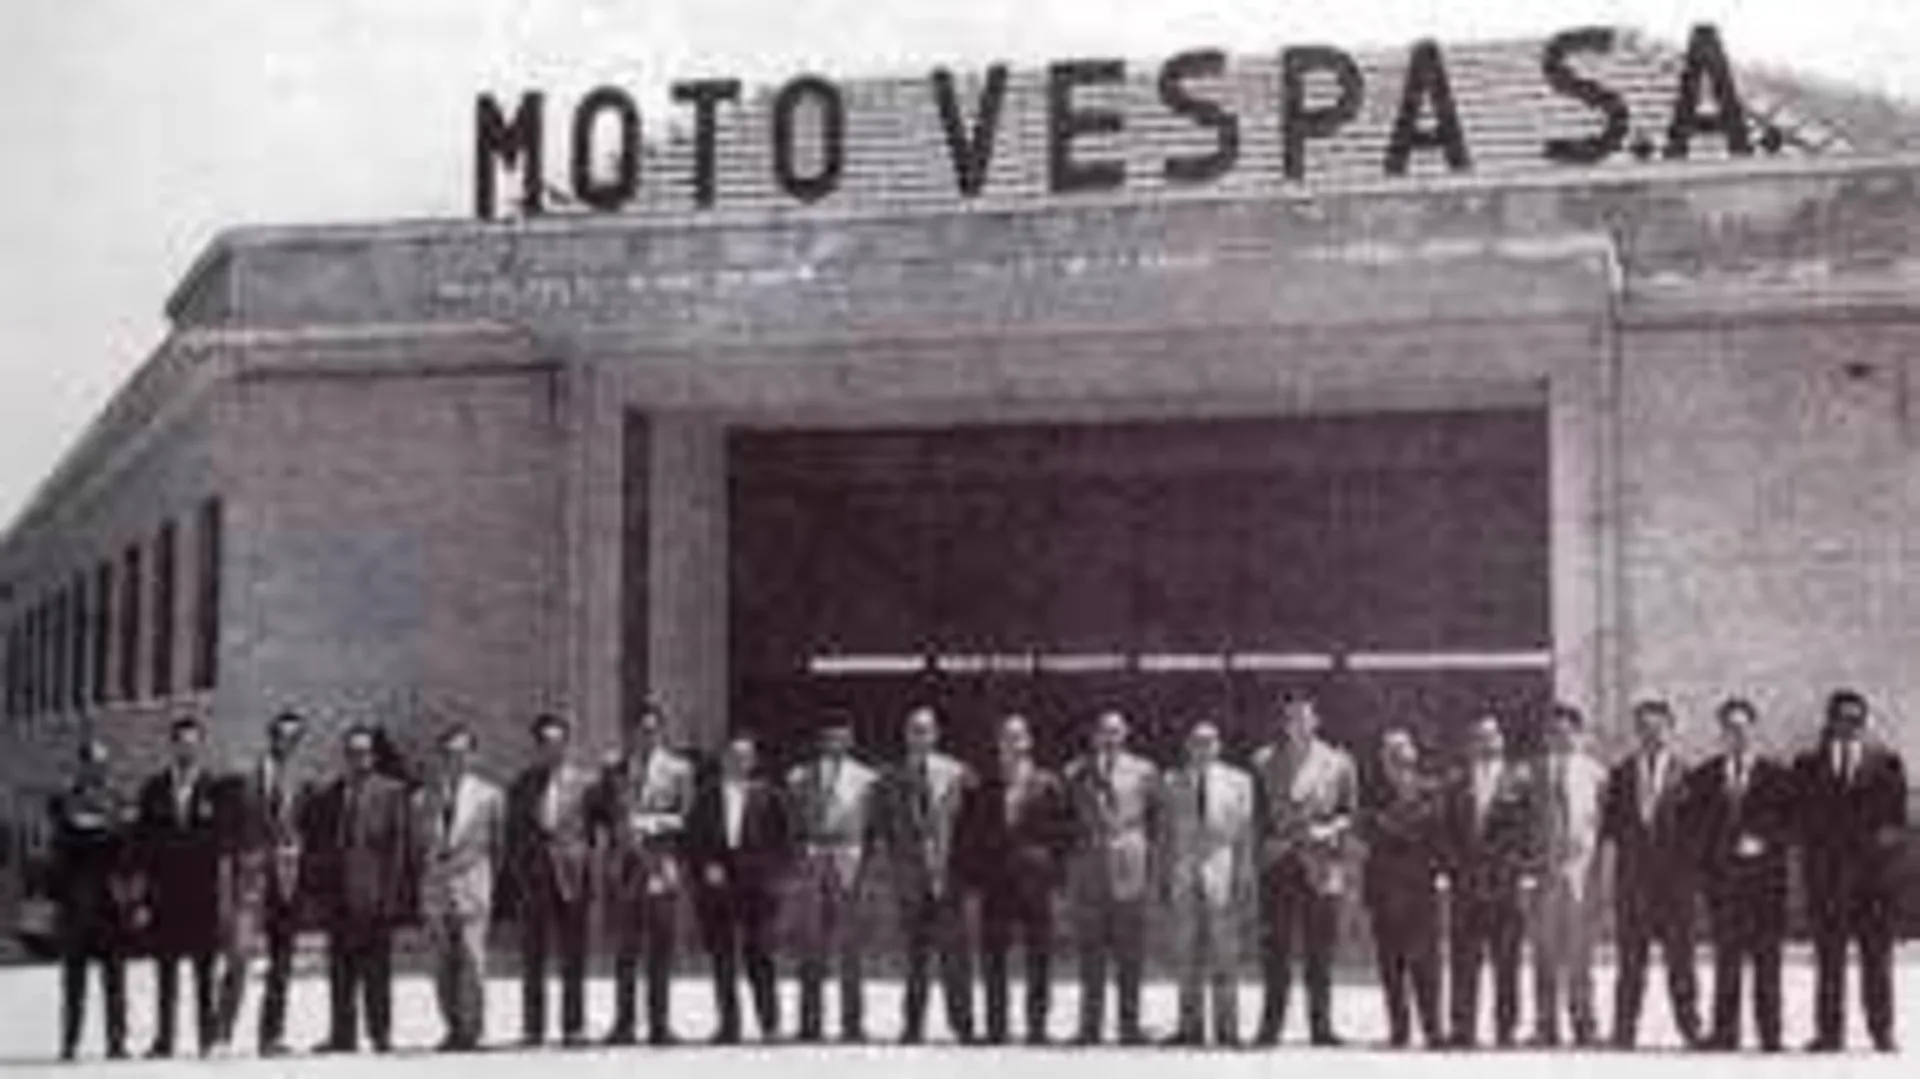 Madrid 1952, Piaggio desembarca en España gracias a Moto Vespa S.A